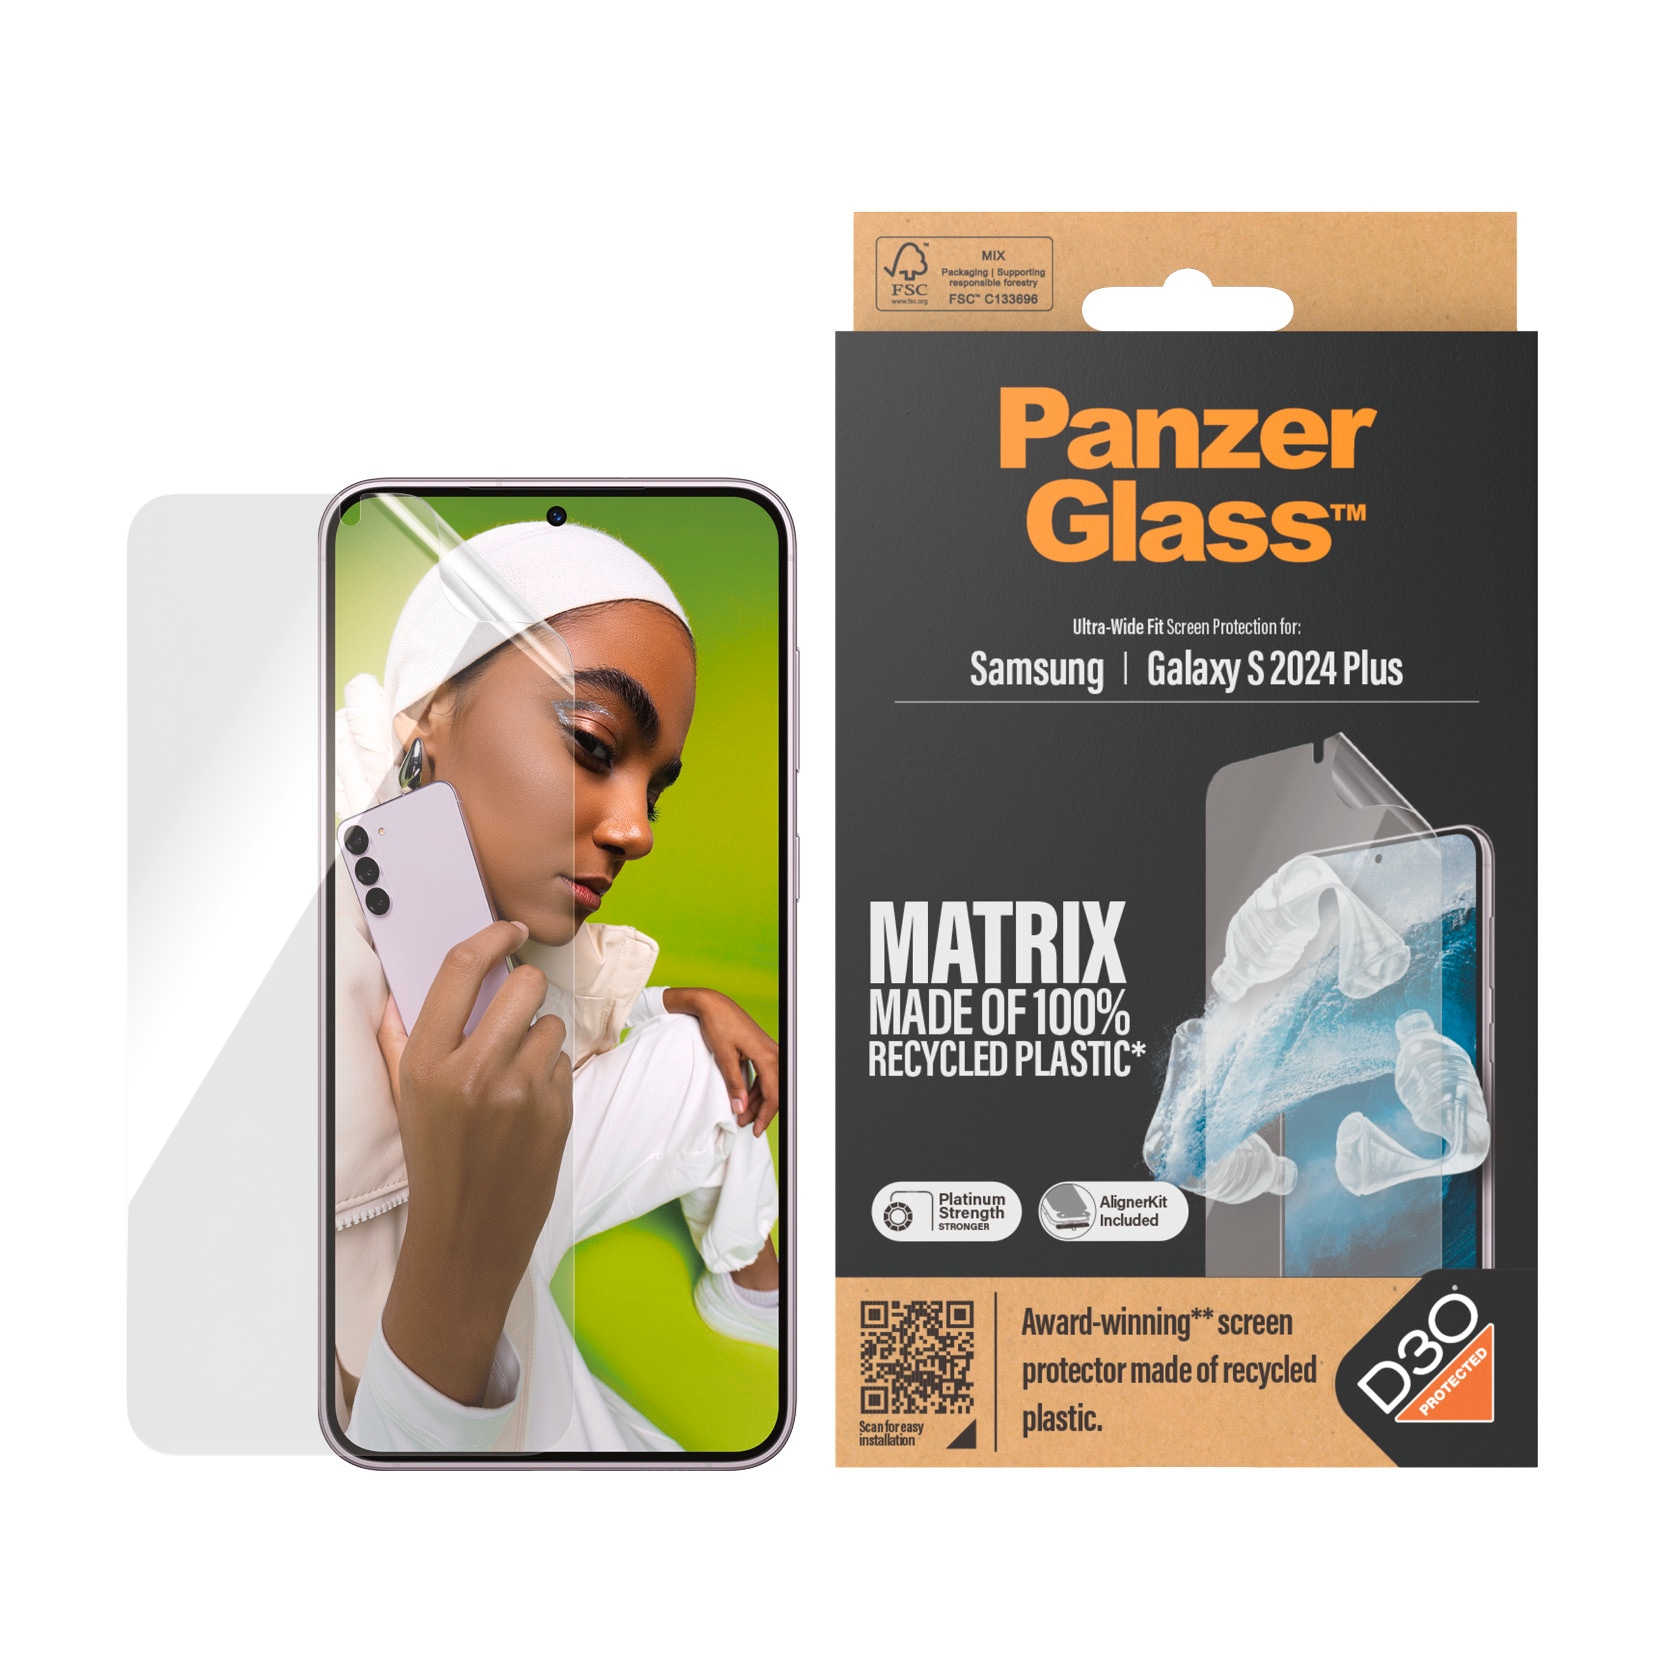 PanzerGlass Displayschutzfolie »Matrix Ultra Wide Fit Screen Protector«, für Samsung Galaxy S24+, Displayschutz, stoßfest, kratzbeständig